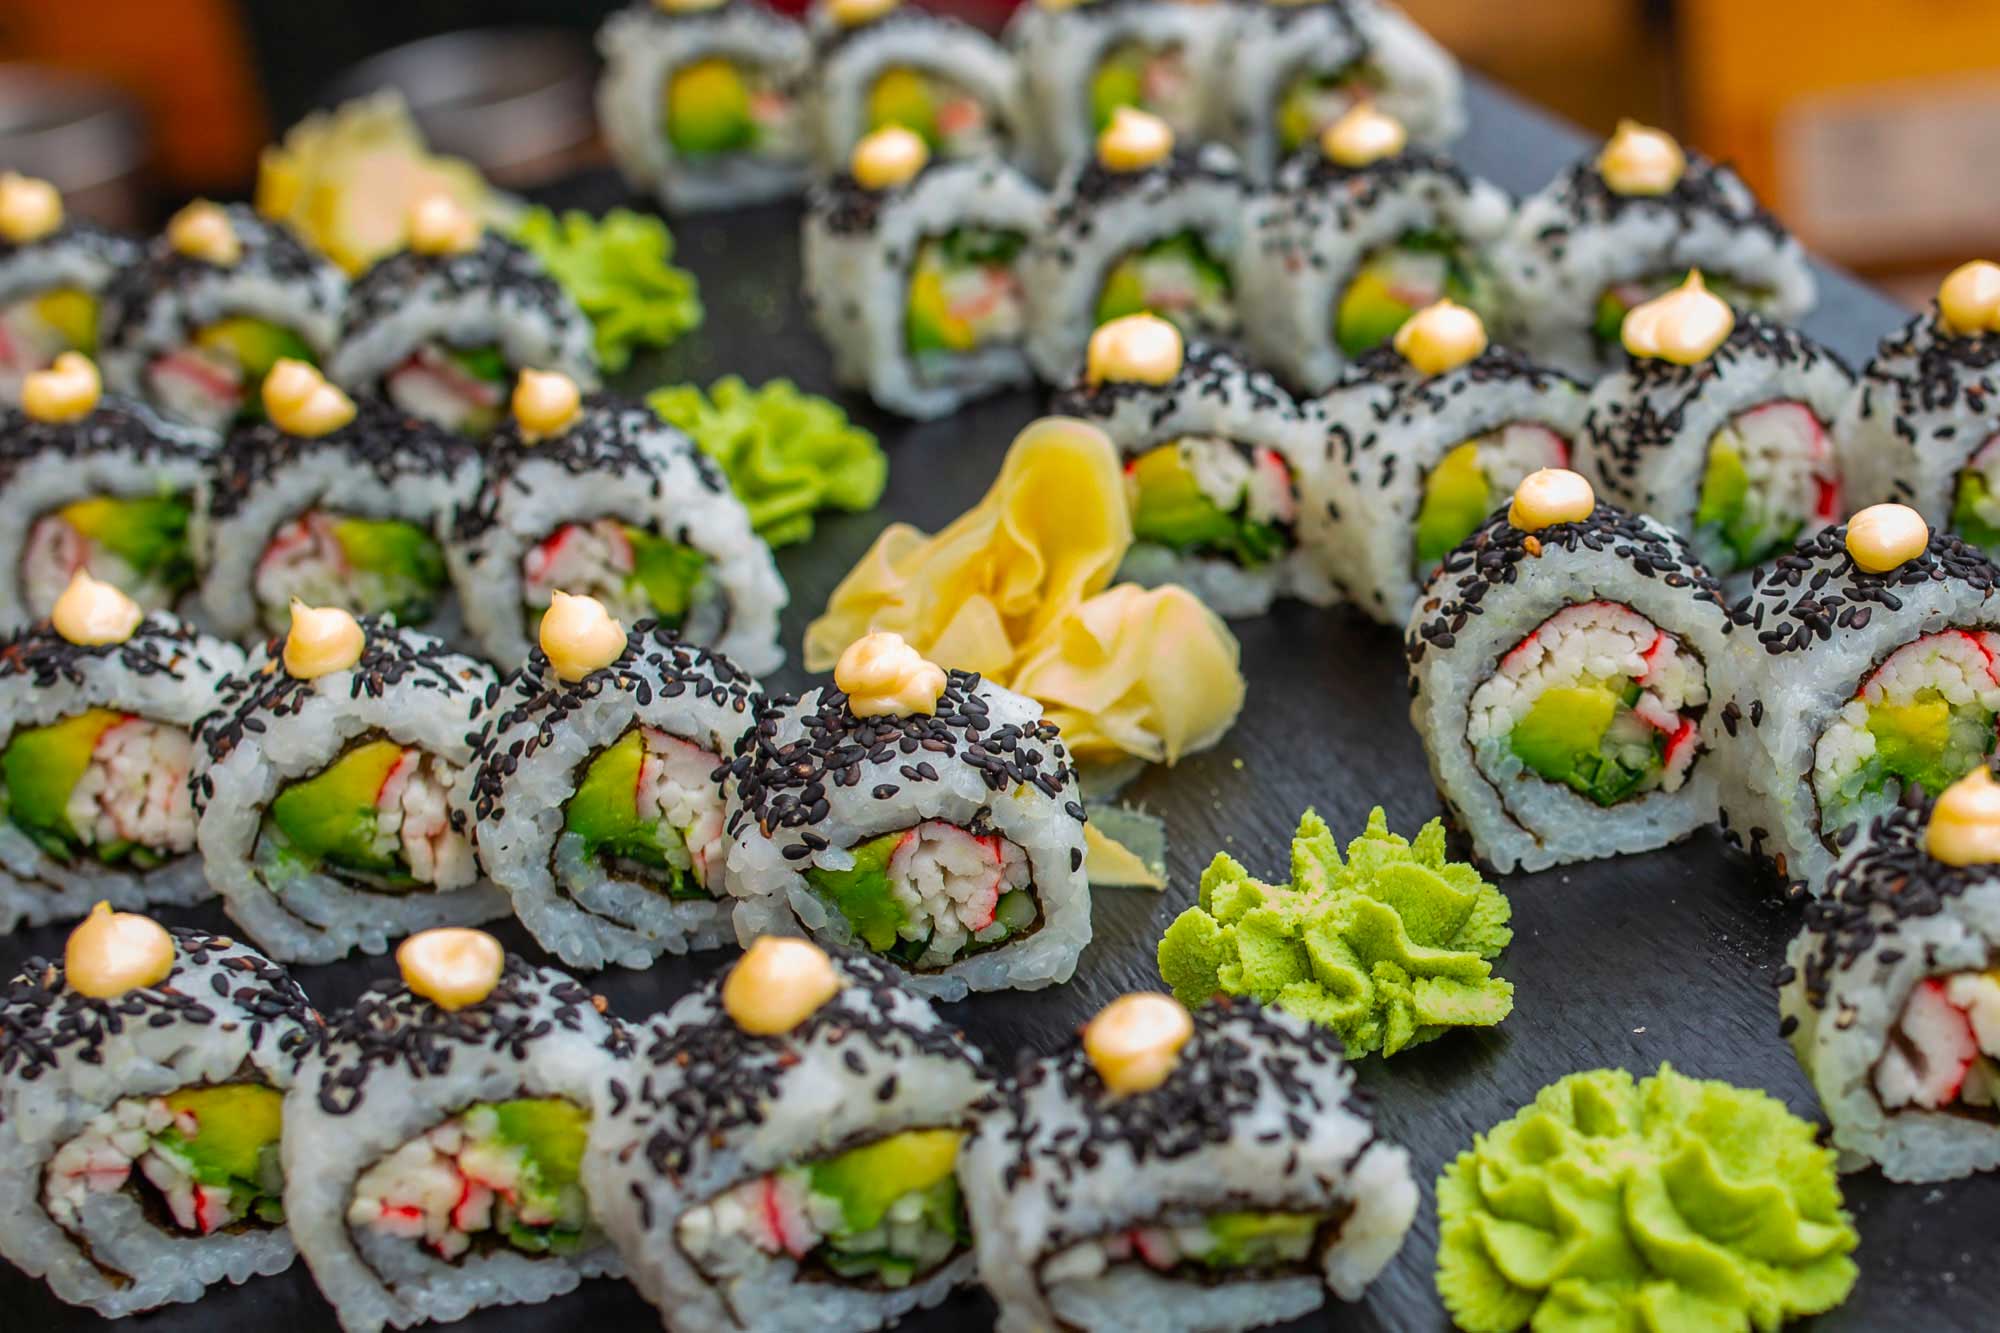 Sushi and Sashimi